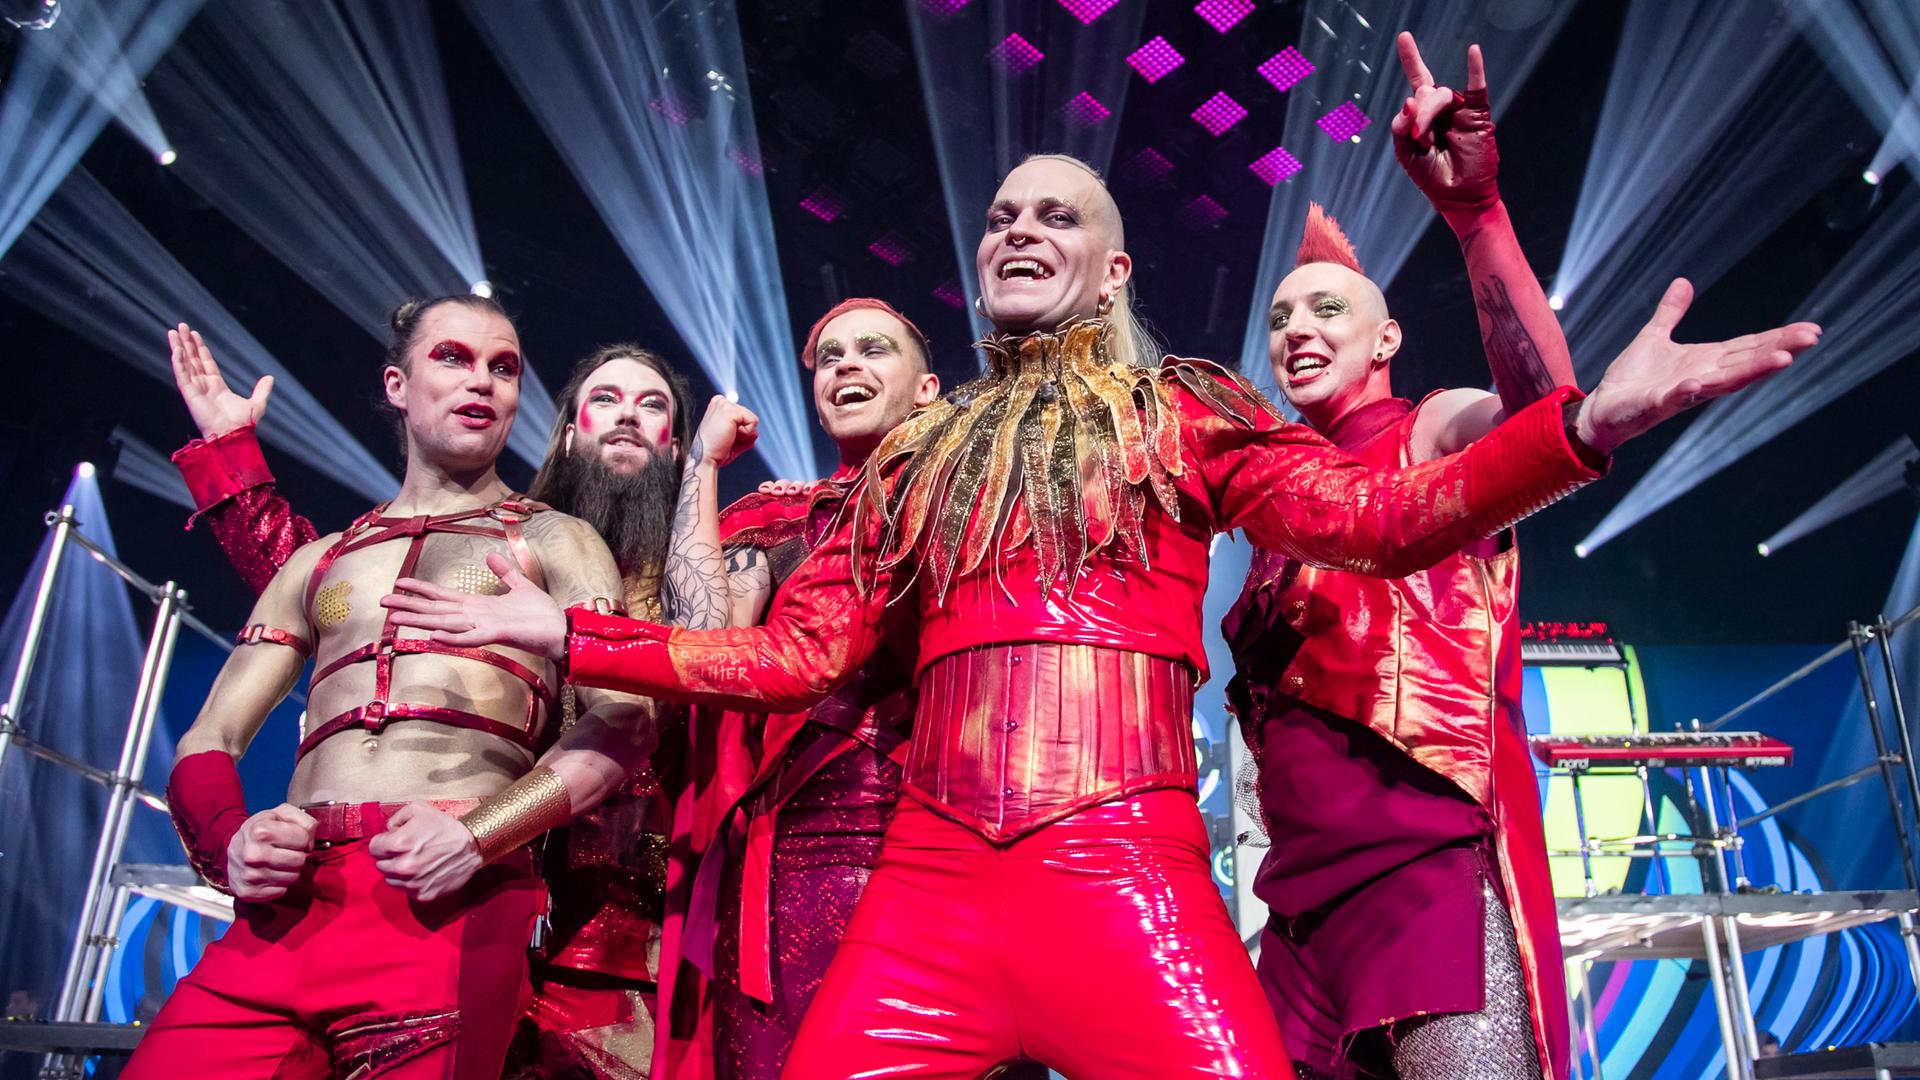 Die Band Lord Of The Lost posiert in roten Kostümen auf der Bühne und guckt in die Kamera.